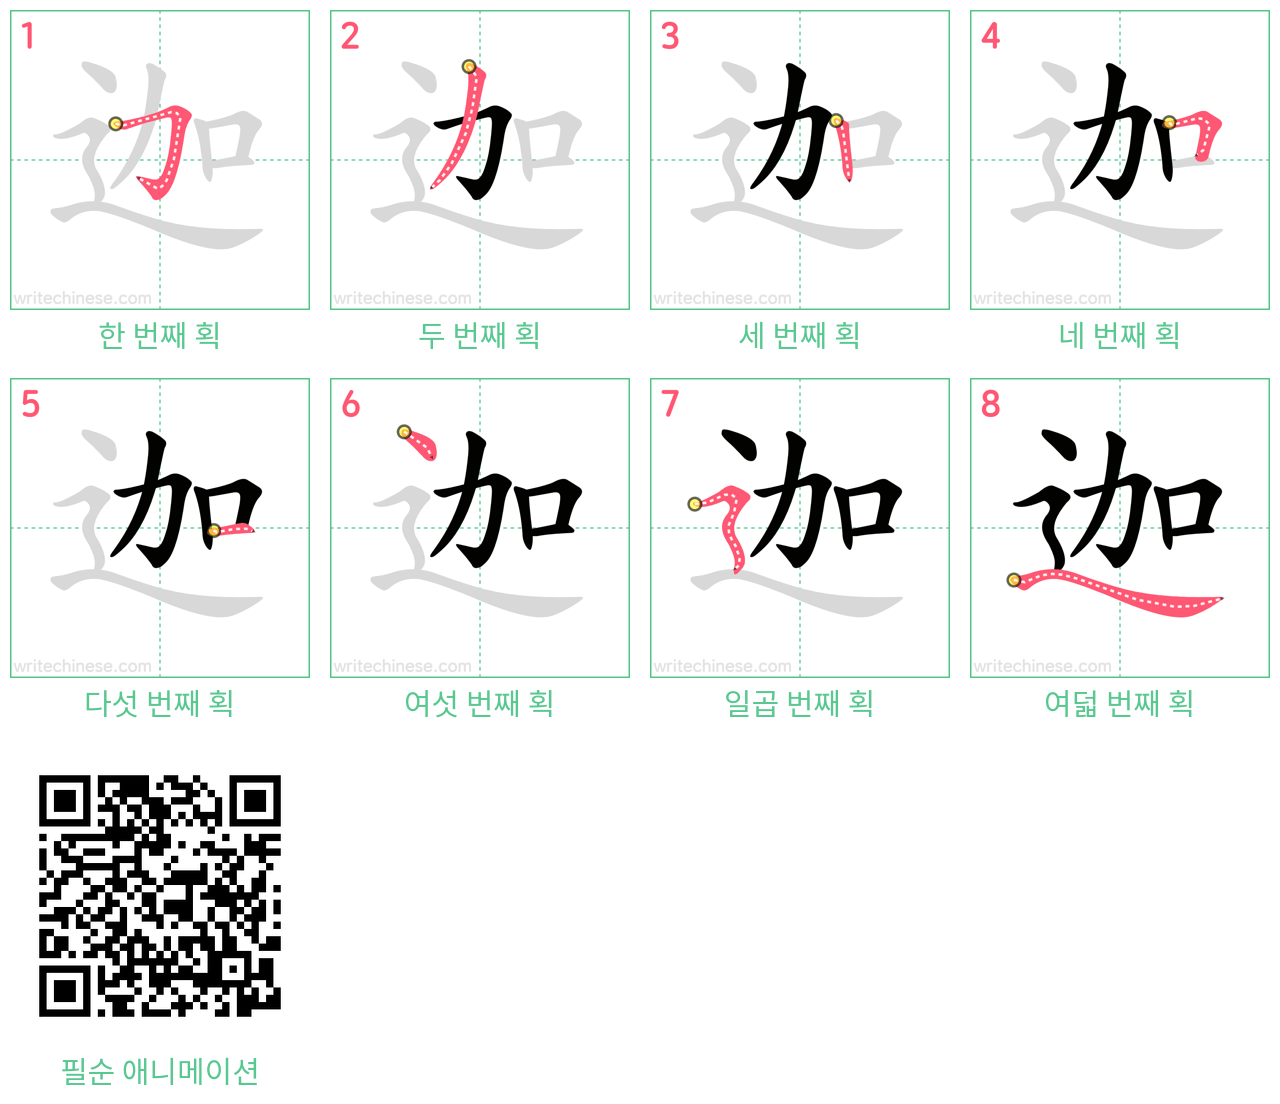 迦 step-by-step stroke order diagrams